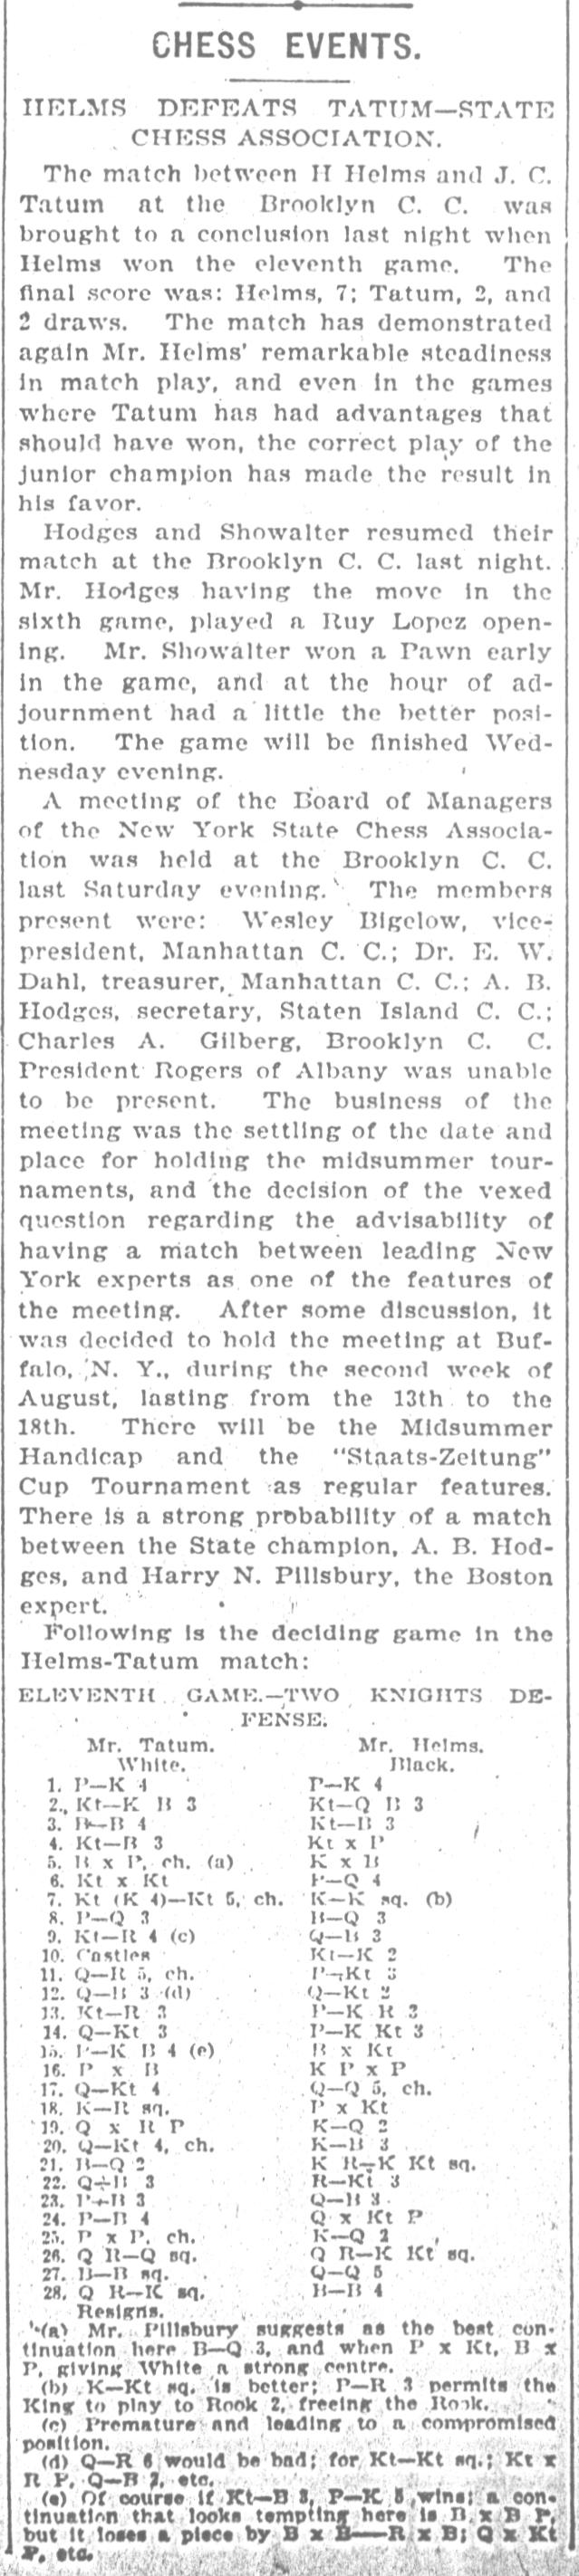 1894.06.12-01 Brooklyn Daily Standard-Union.jpg